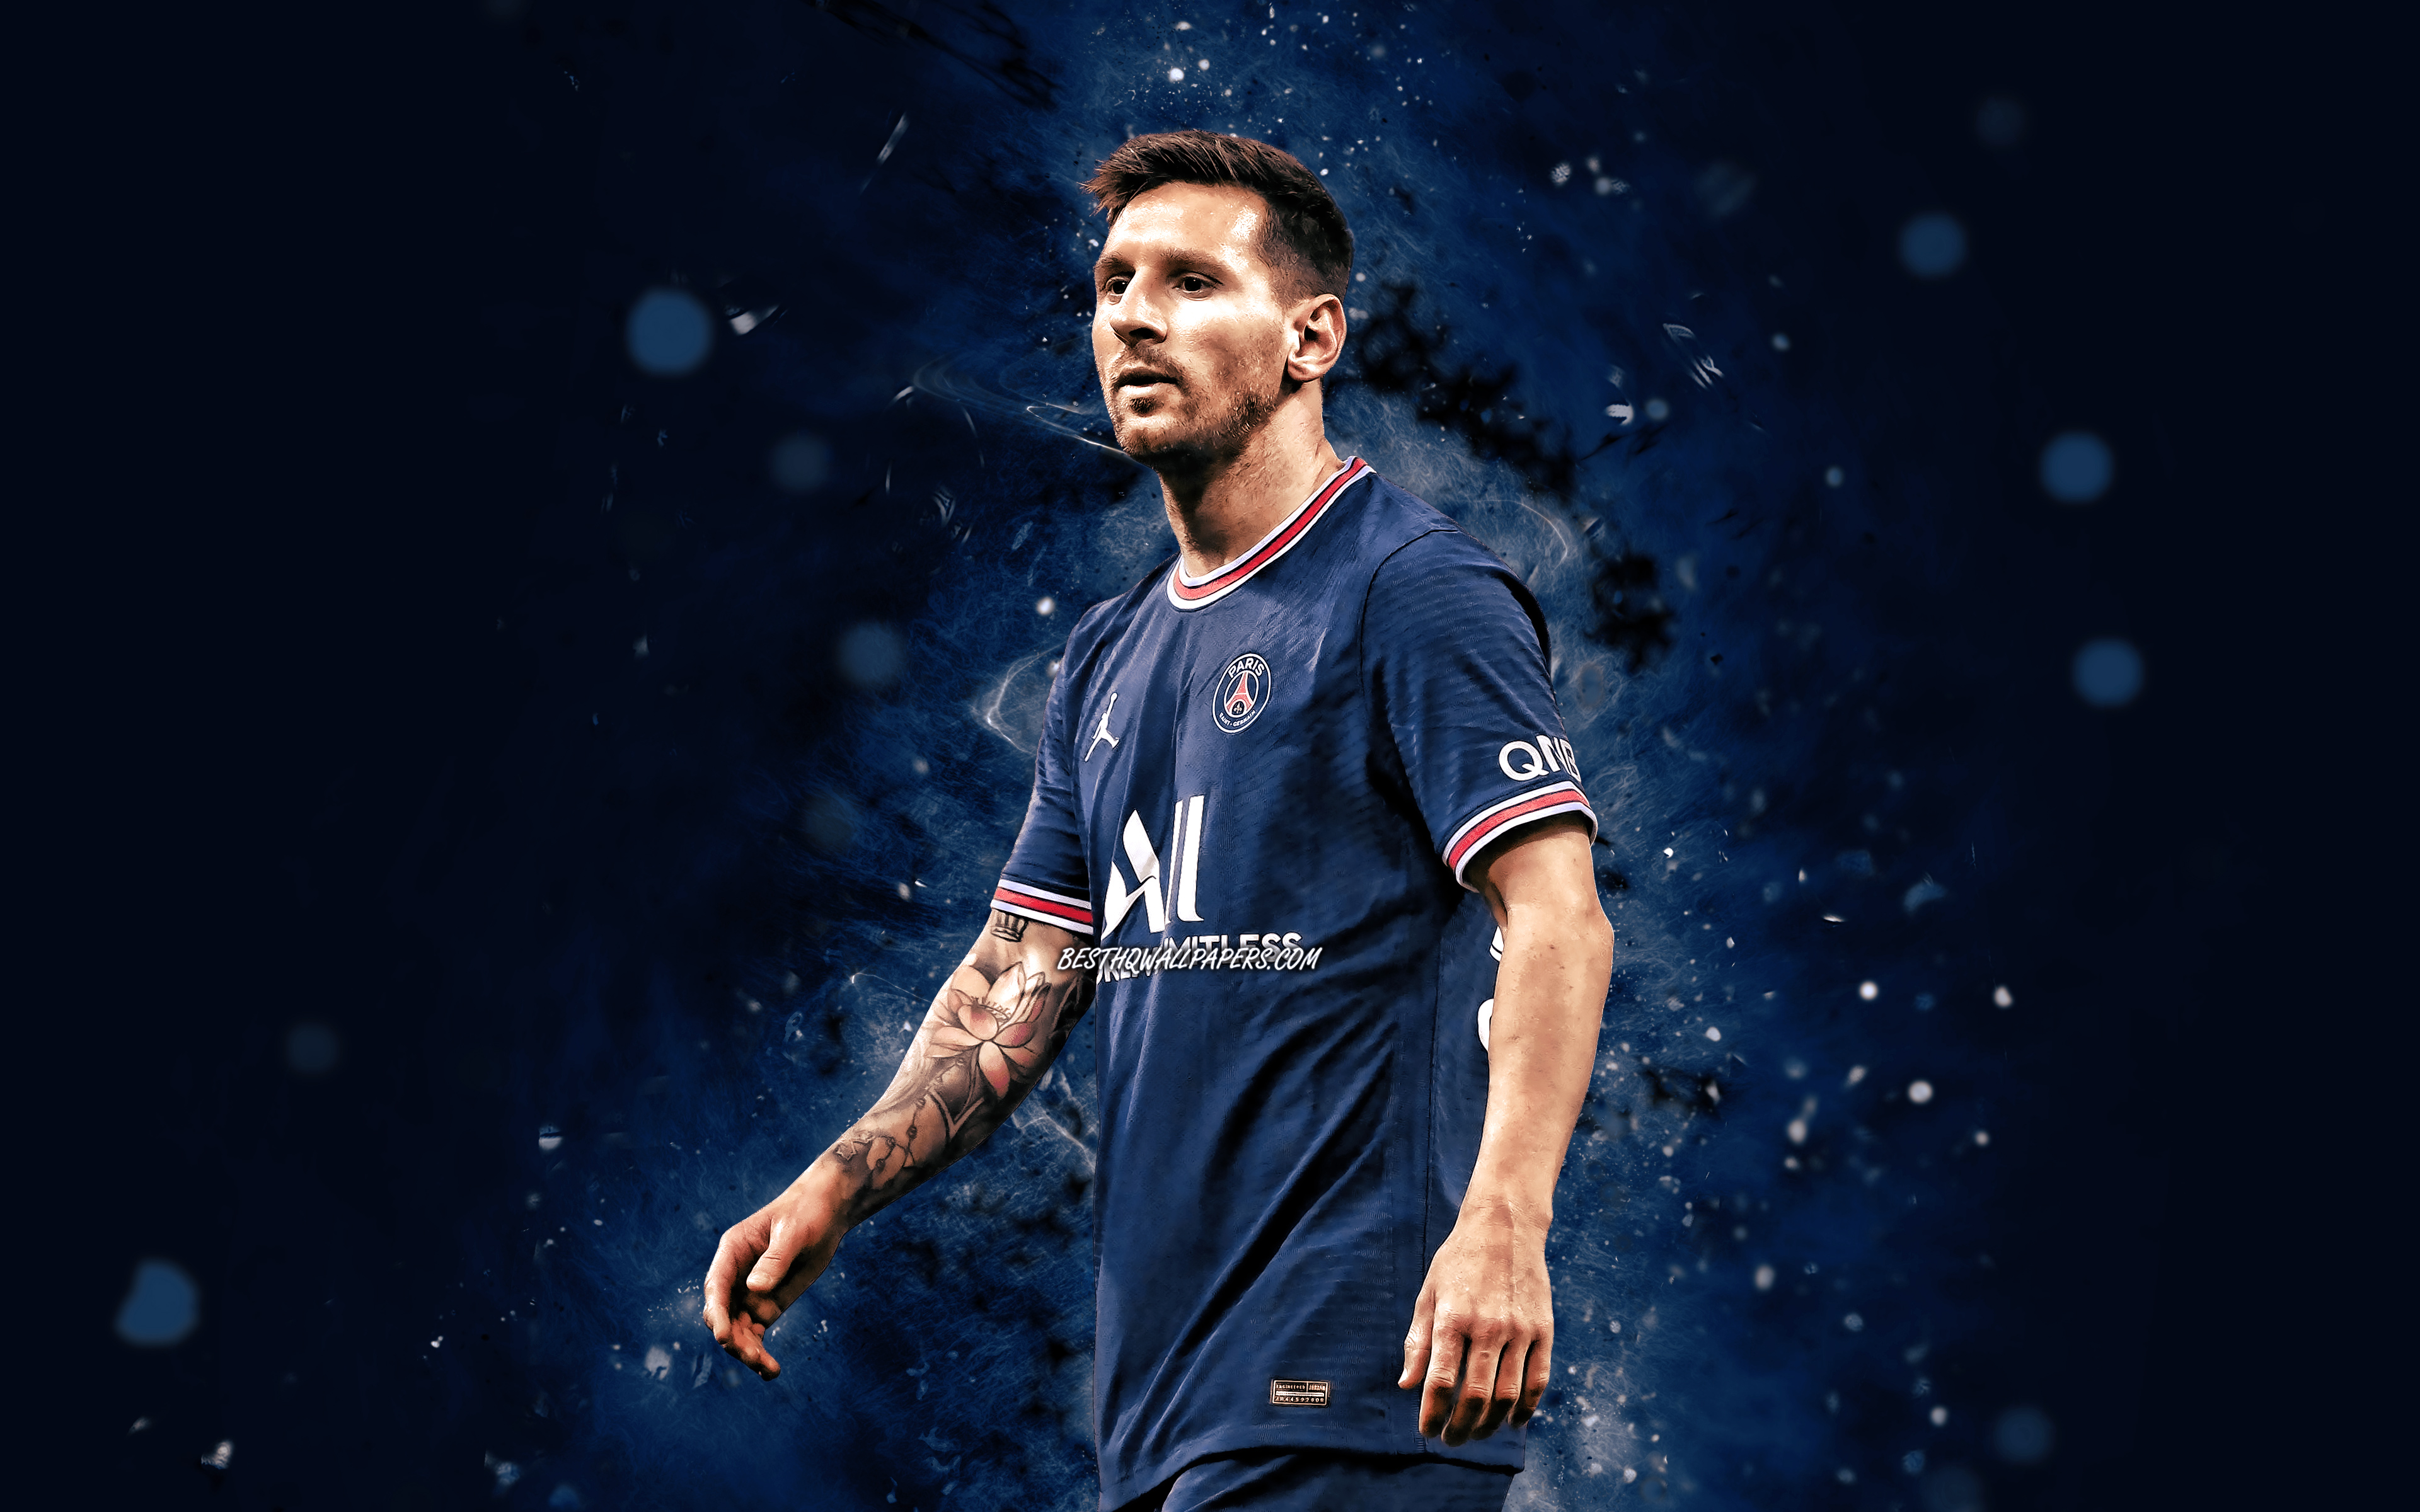 Trải nghiệm khoảng khắc thư giãn với bộ sưu tập hình nền đẹp nhất 2024 về chủ đề Lionel Messi. Mỗi chi tiết được thiết kế với tinh tế và hoàn hảo, khiến trái tim bạn sẽ đập nhanh hơn chỉ với một cái nhìn đầu tiên. Nếu bạn là fan của Messi, đây chính là tin đồn vô cùng hấp dẫn và đáng để xem ngay.